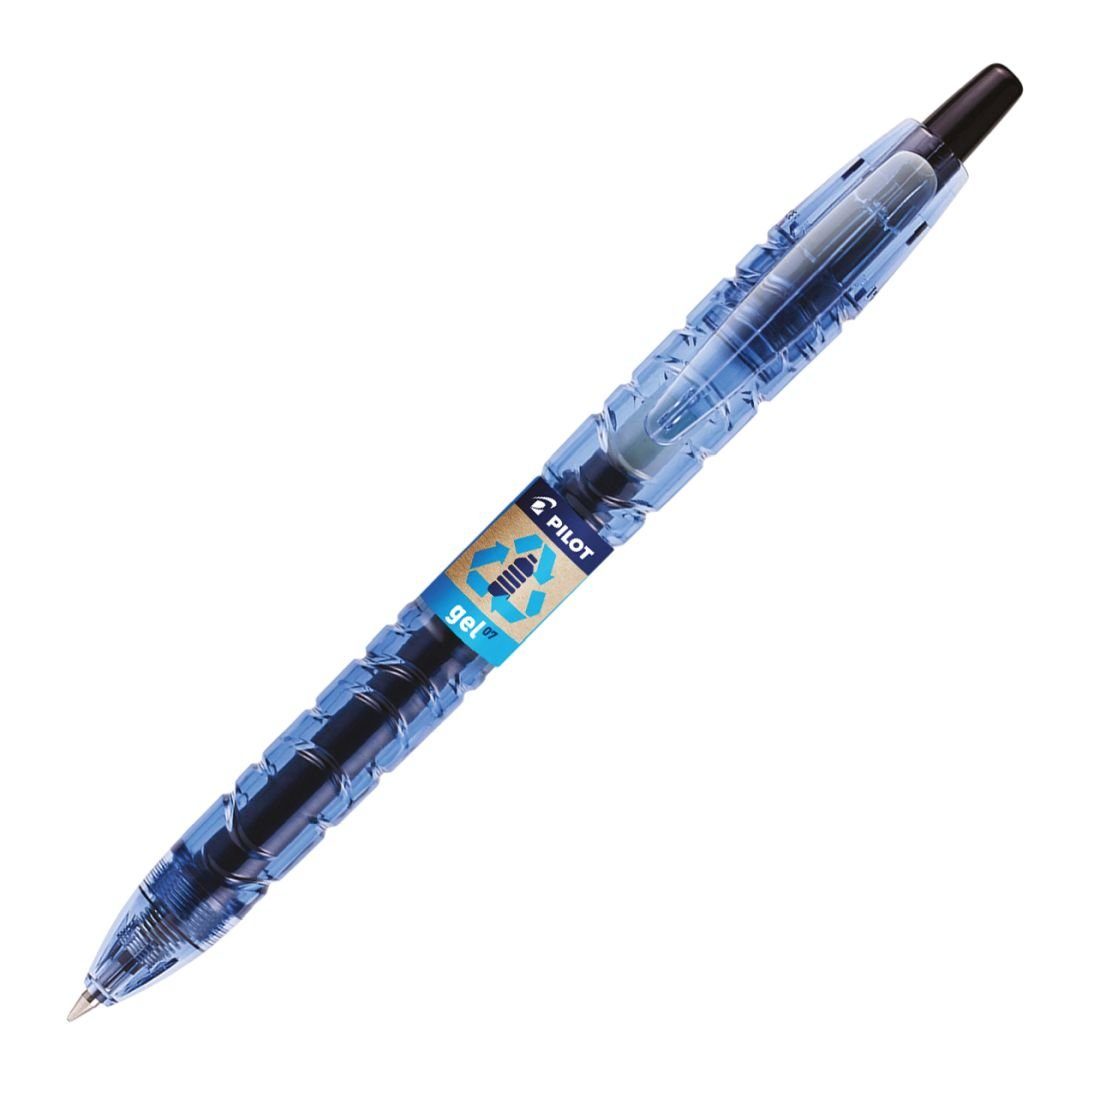 2 Pen PILOT schwarz B2P Tintenroller schwar - Gelschreiber 0,7 Begreen Bottle